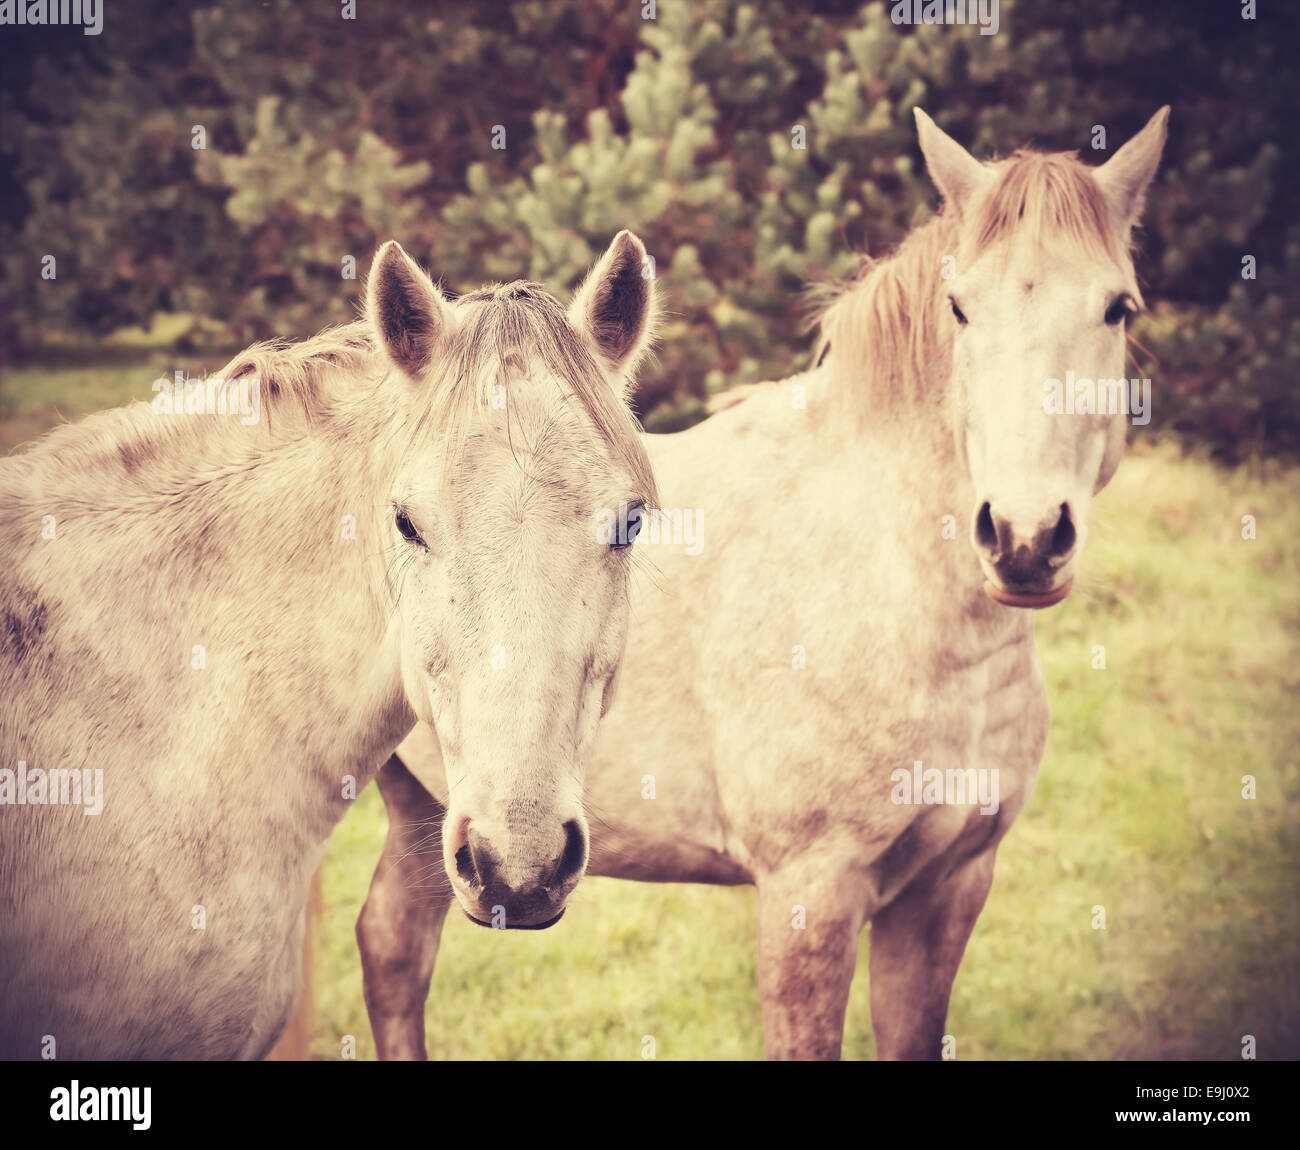 Retro-Stil Bild von zwei jungen Pferden. Stockfoto